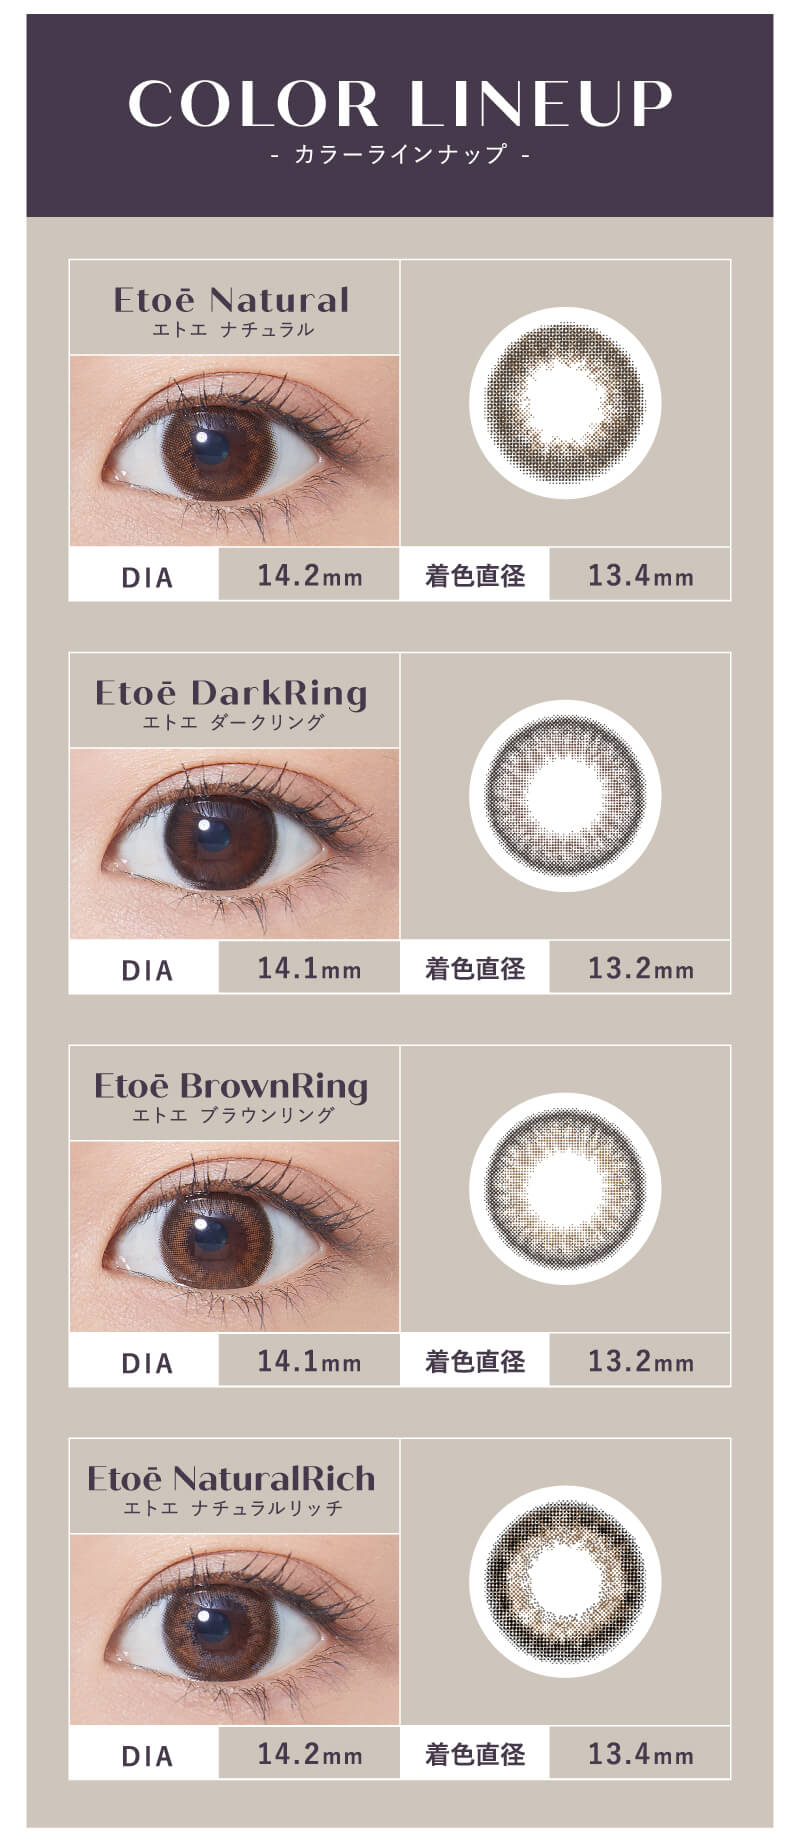 日本人の瞳になじみやすいナチュラルカラコンEtoe(エトエ)カラー別詳細